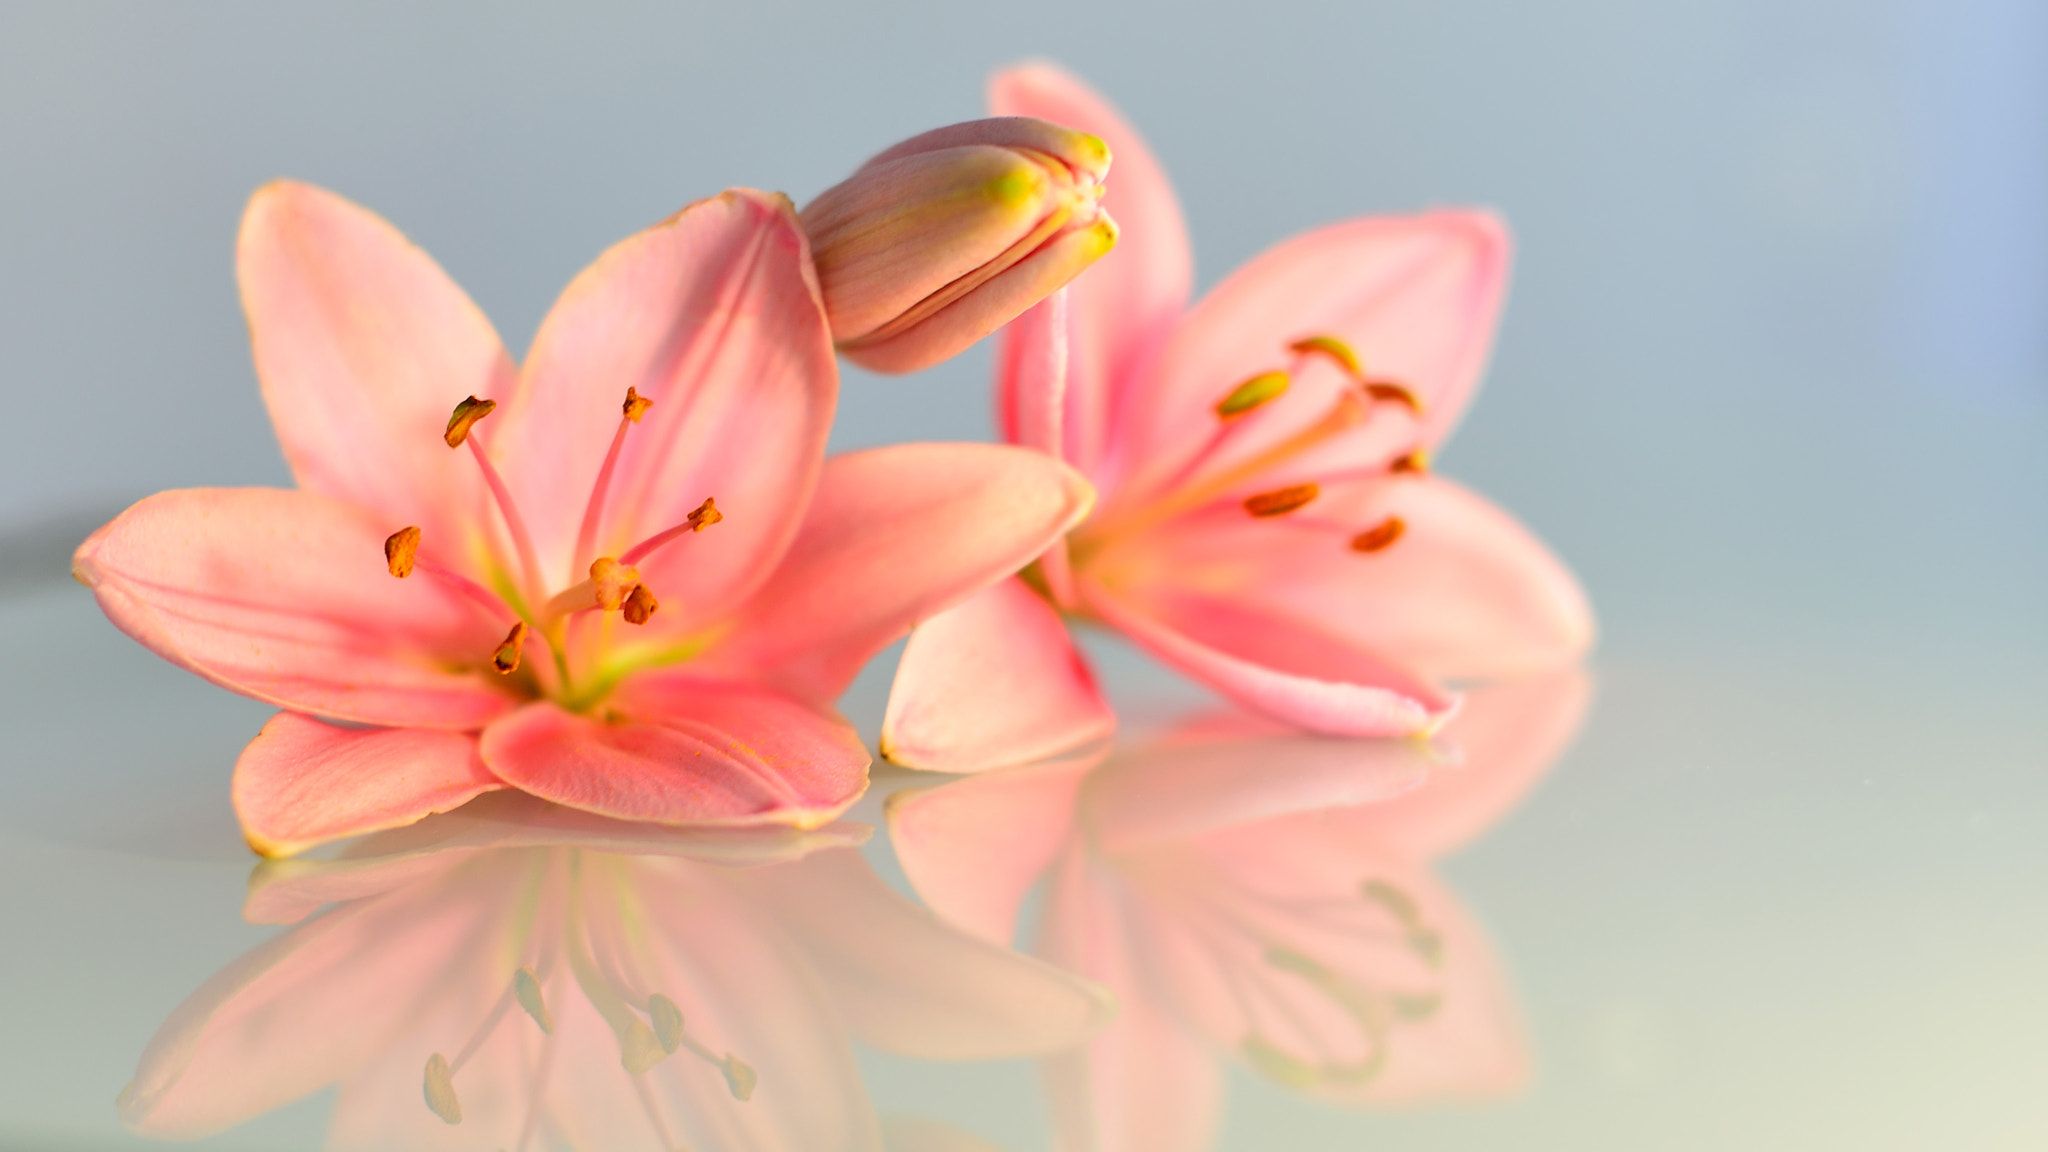 Nikon D600 sample photo. Beautiful lilies photography